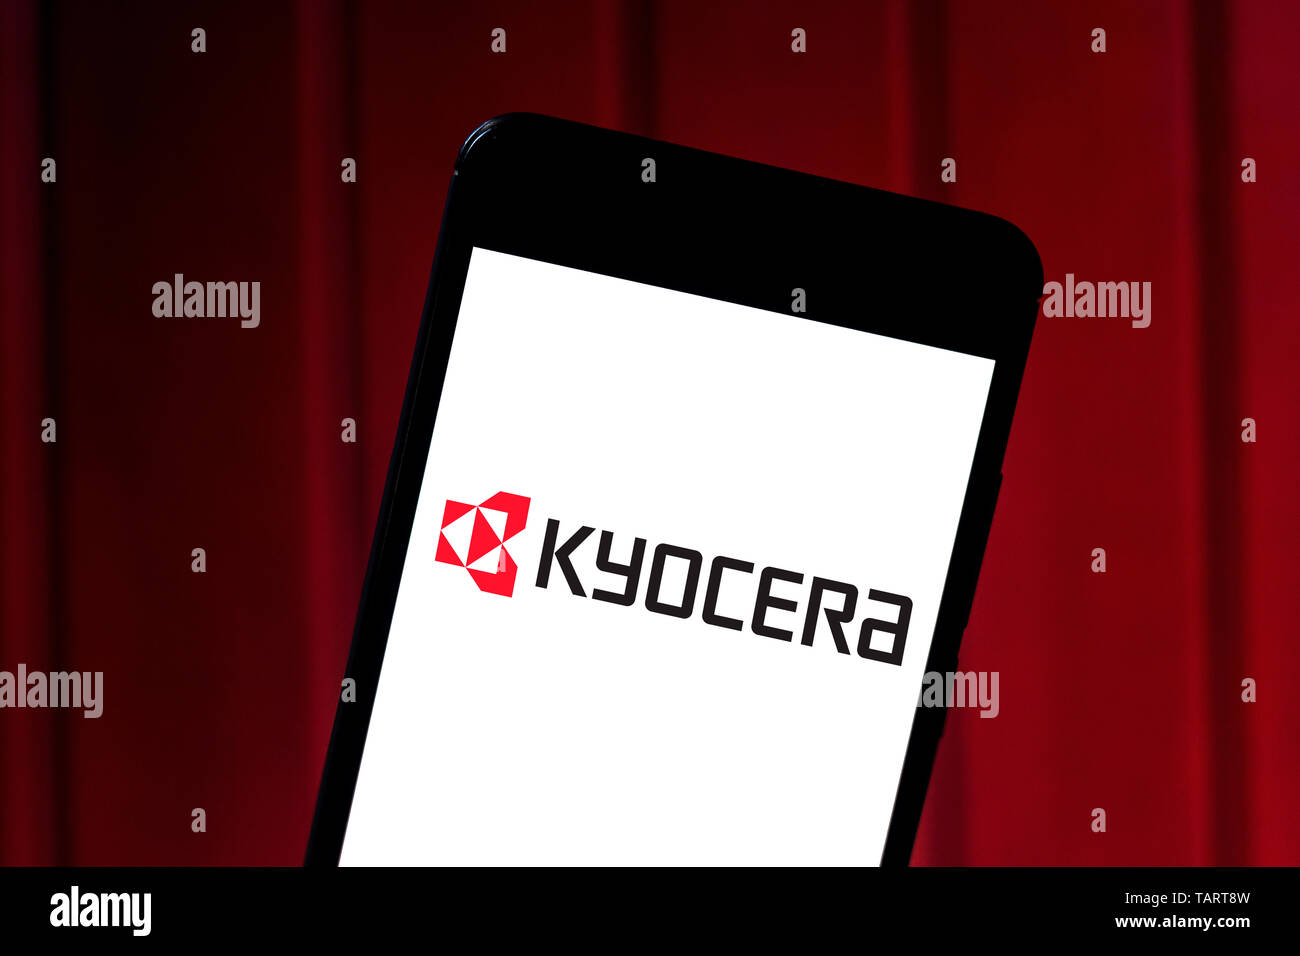 Logo kyocera Banque de photographies et d'images à haute résolution - Alamy